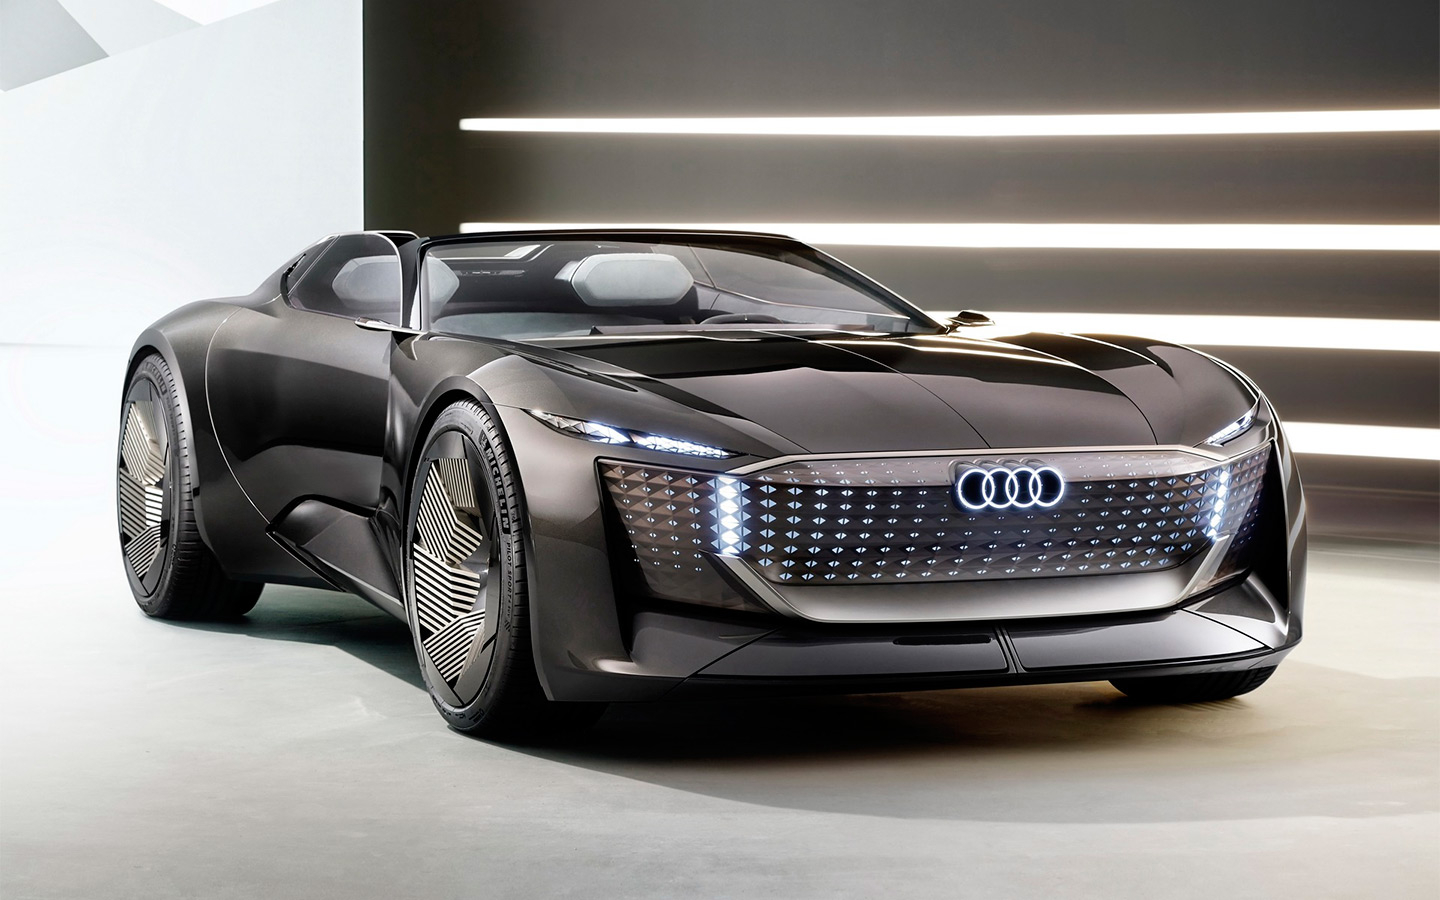 Audi выпустила 632-сильный концепт-трансформер с автопилотом